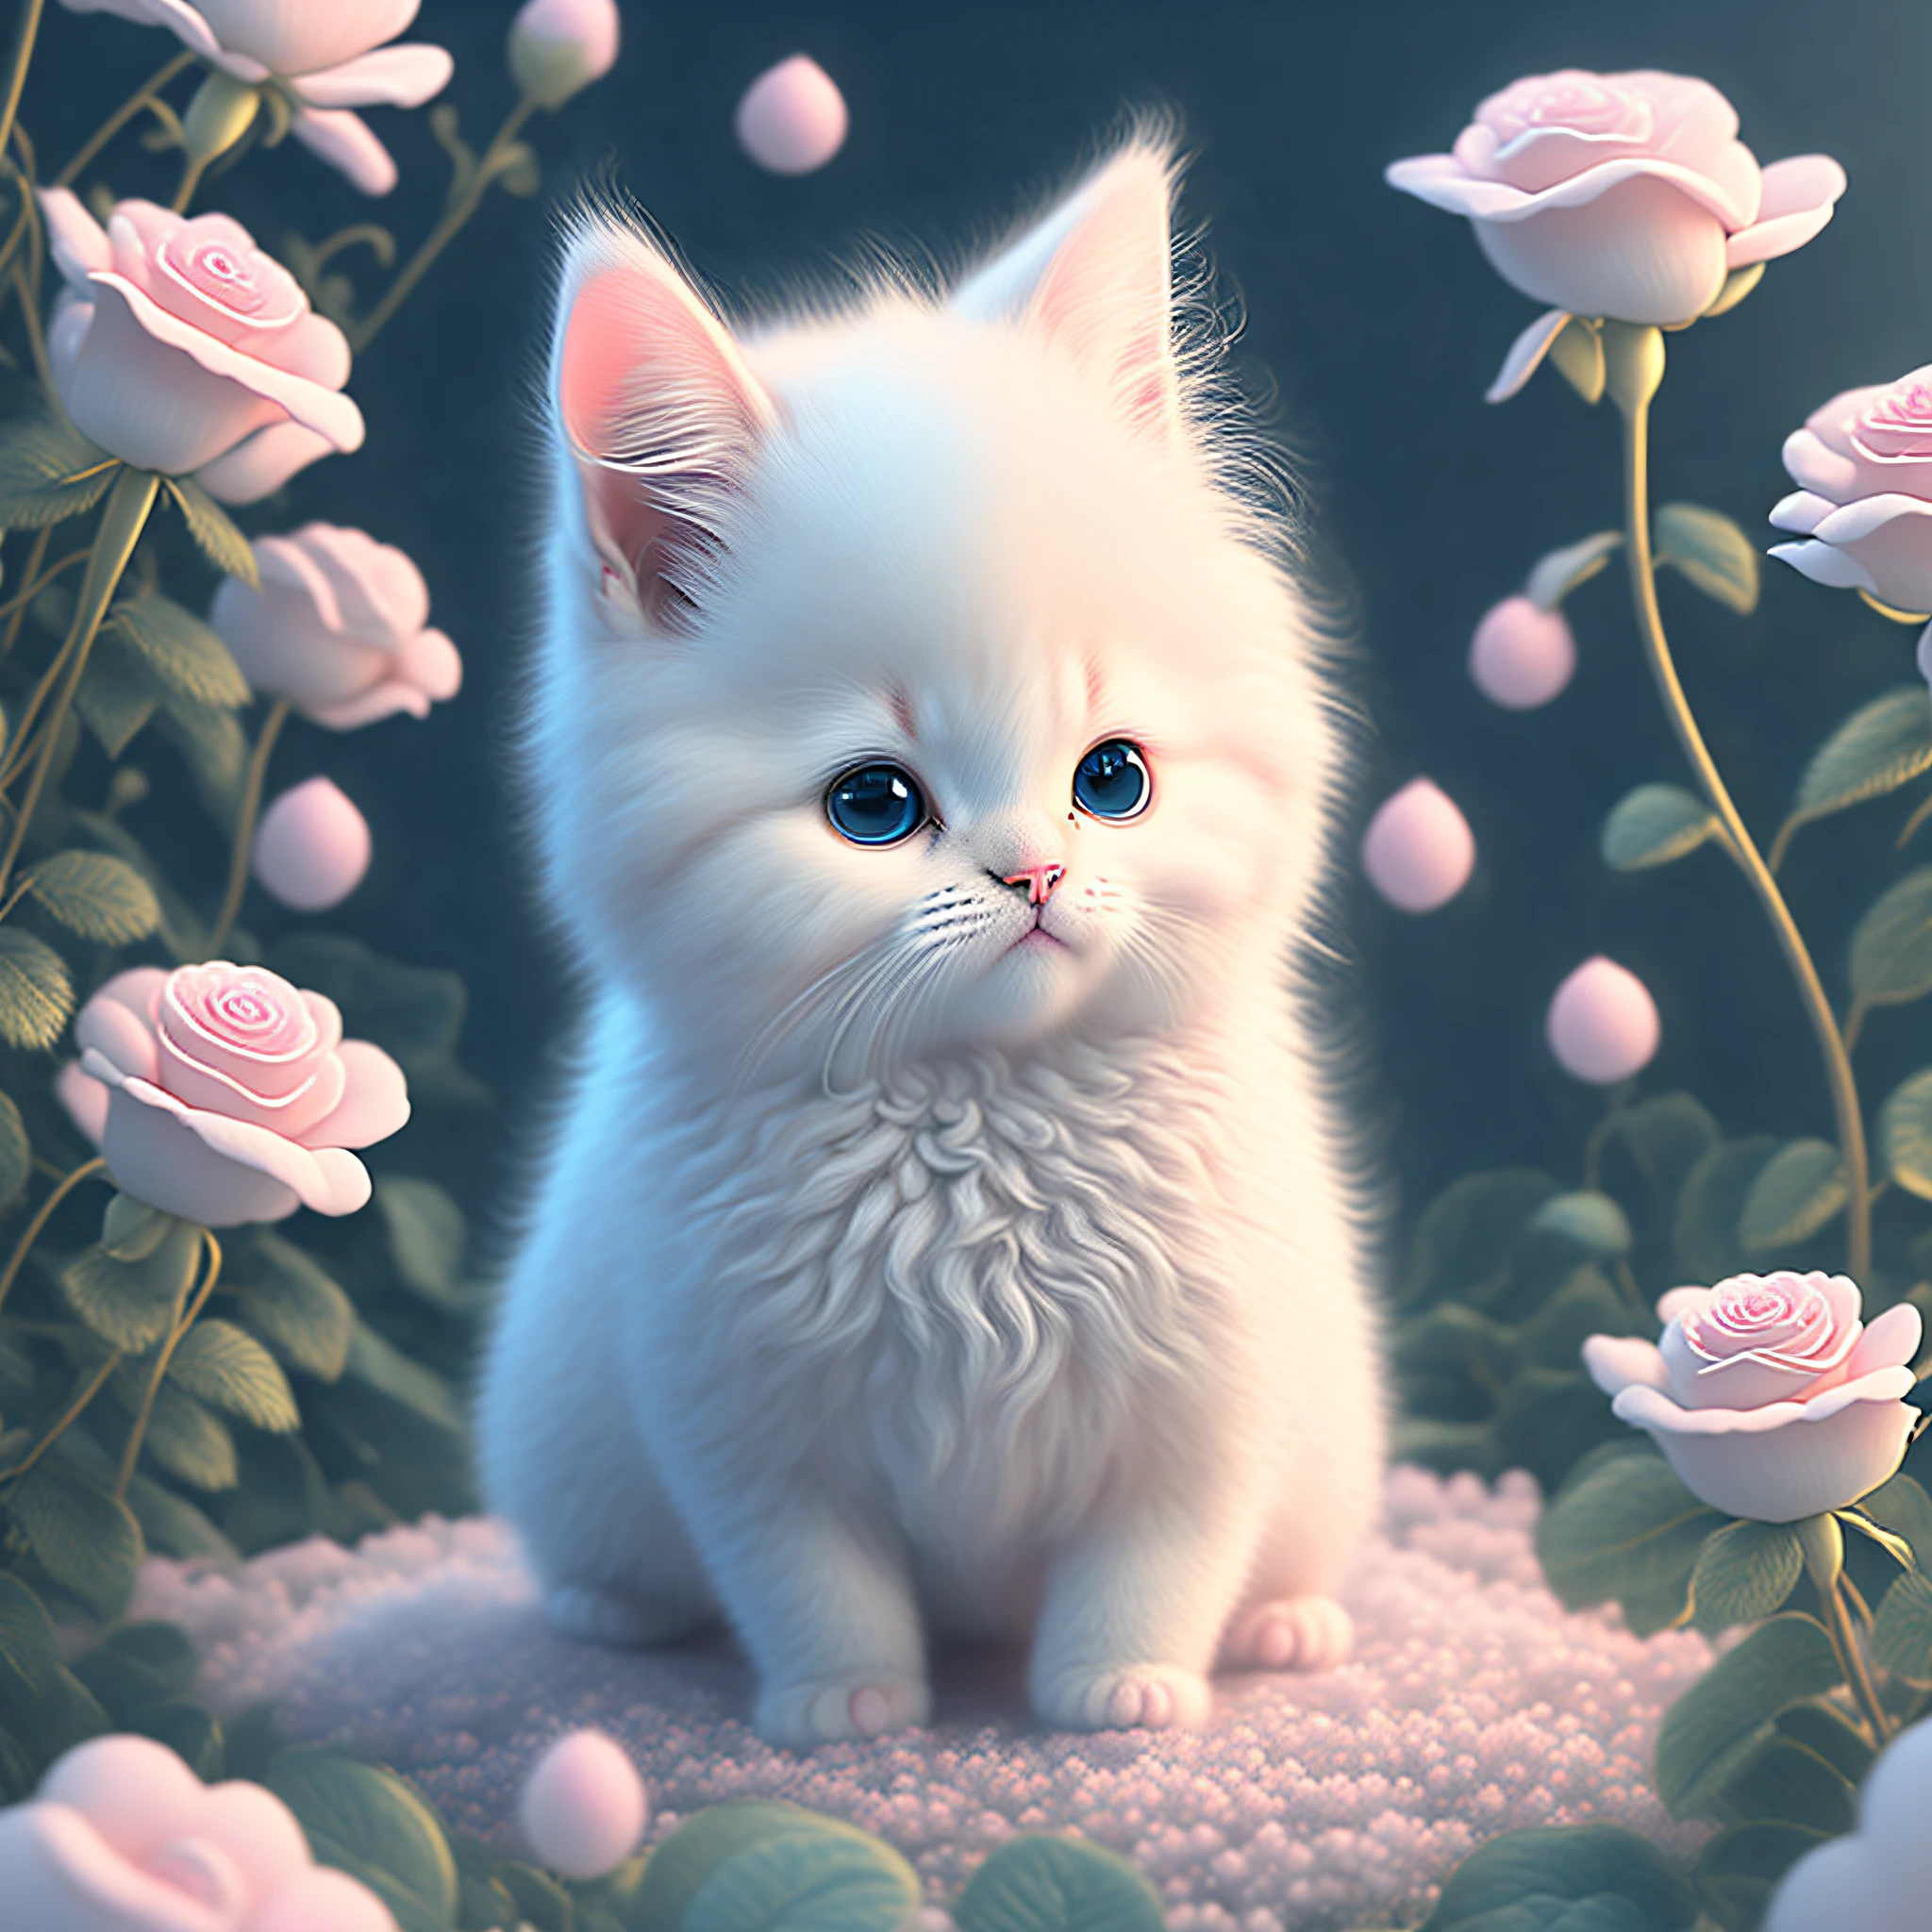 In dieser ultra-detaillierten CG-Kunst, Das entzückende Kätzchen, umgeben von ätherischen Rosen, beste Qualität, hohe Auflösung, komplizierte Details, Fantasie, süße Tiere